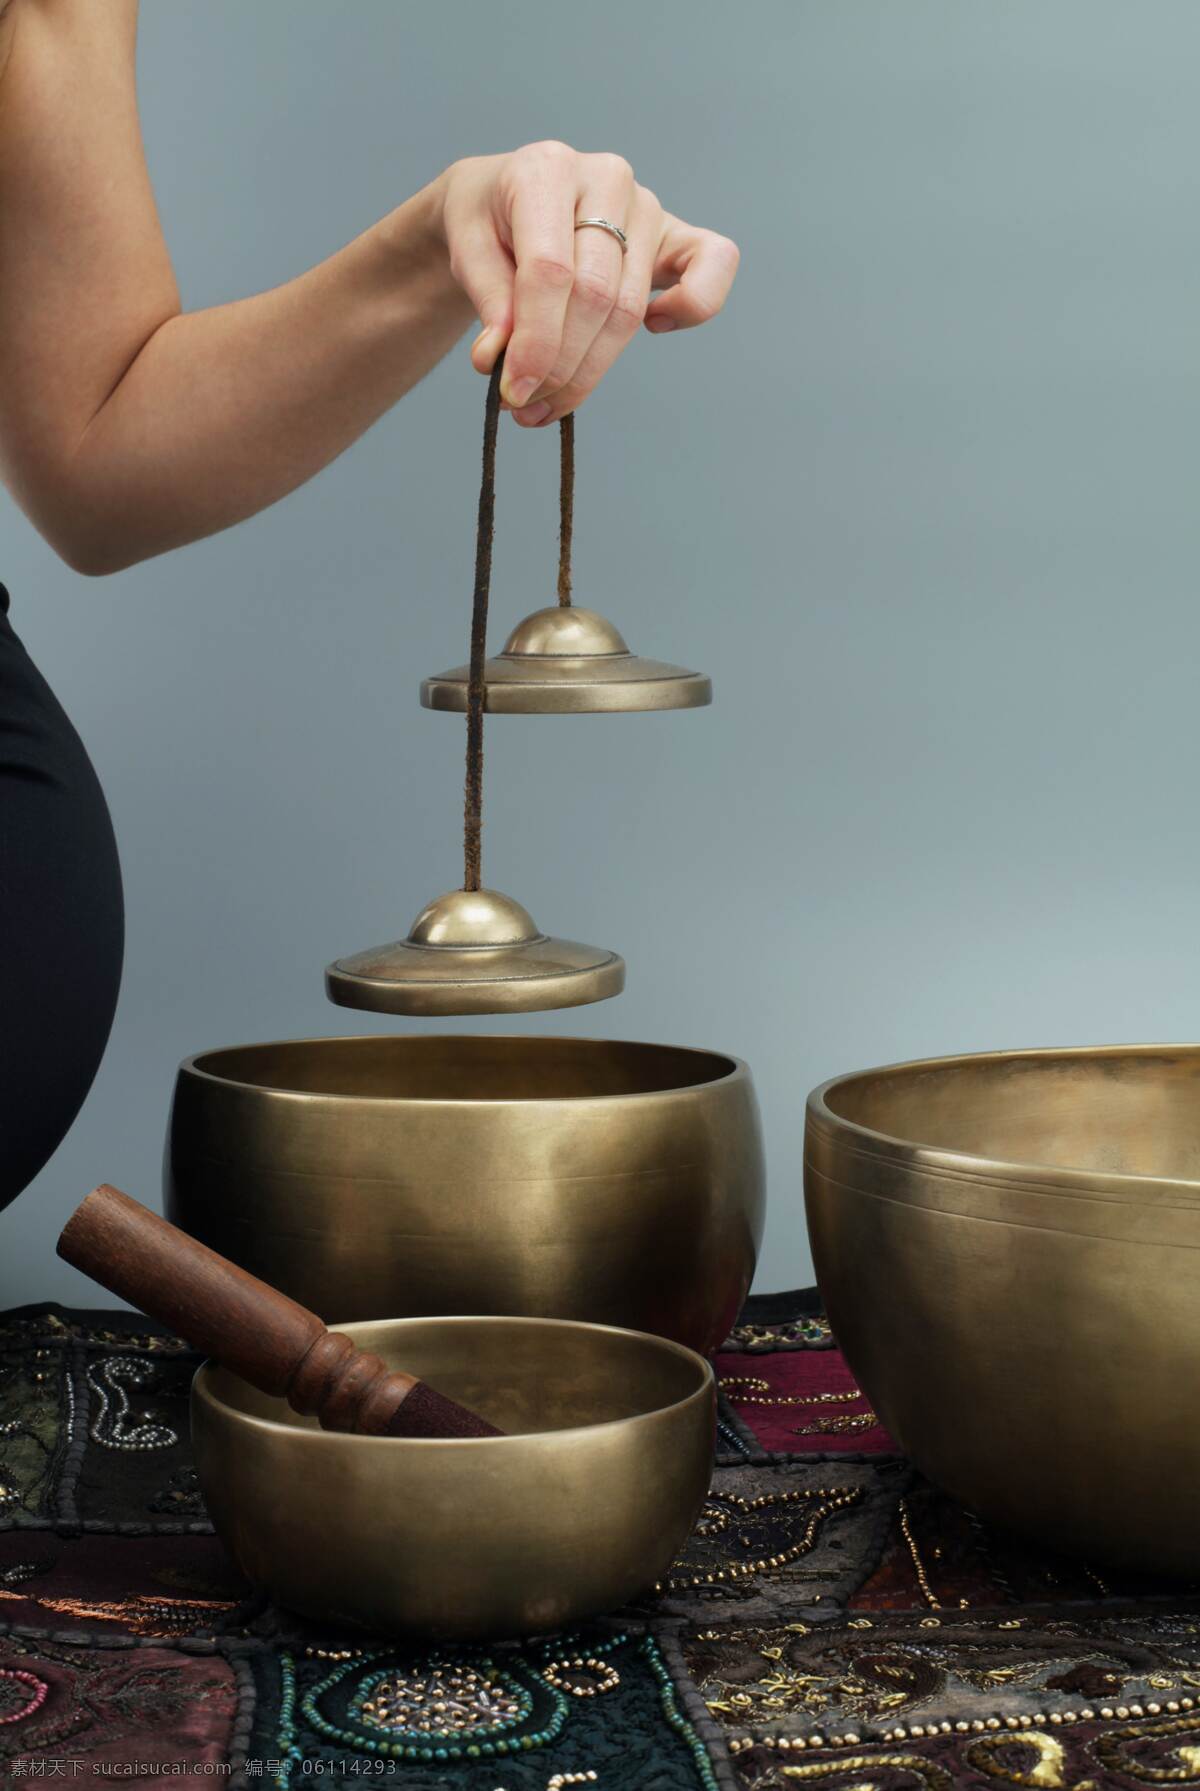 铜碗 罐子 铜器 器皿 坛子 文物 古董 出土 无锡惠山泥人 文化艺术 传统文化 各类素材